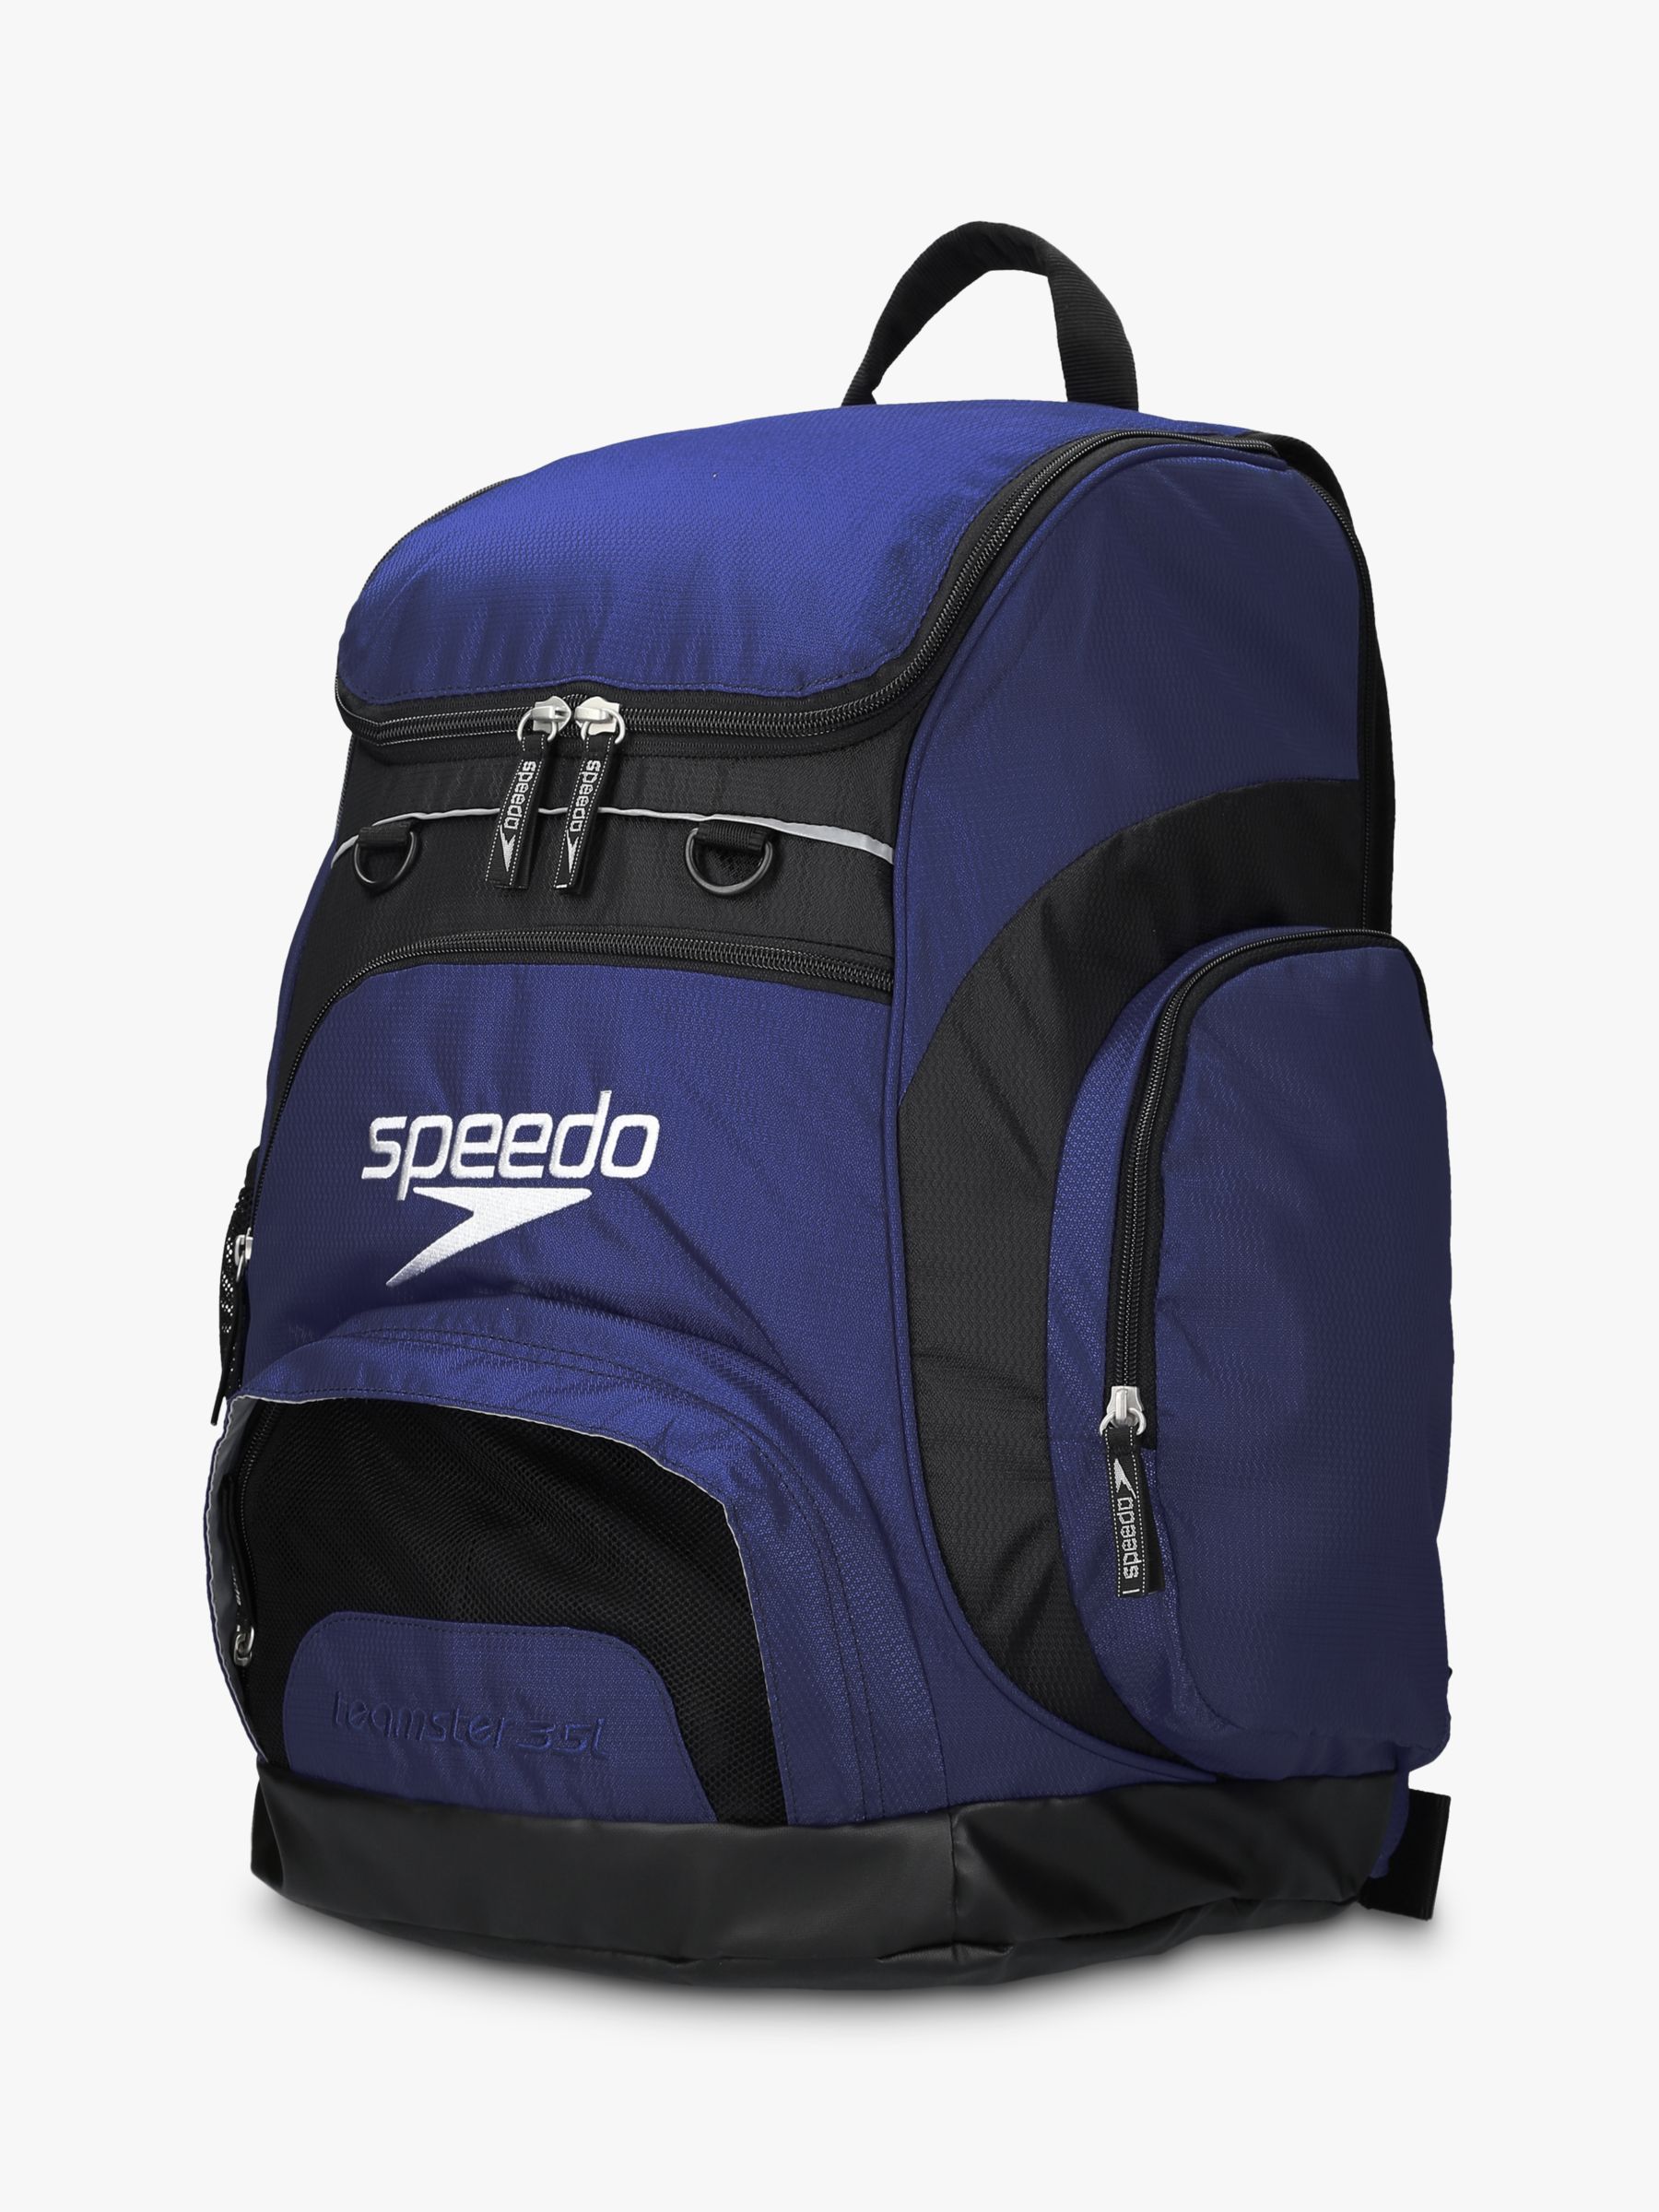 Speedo Teamster Swim Backpack, Navy at John Lewis & Partners